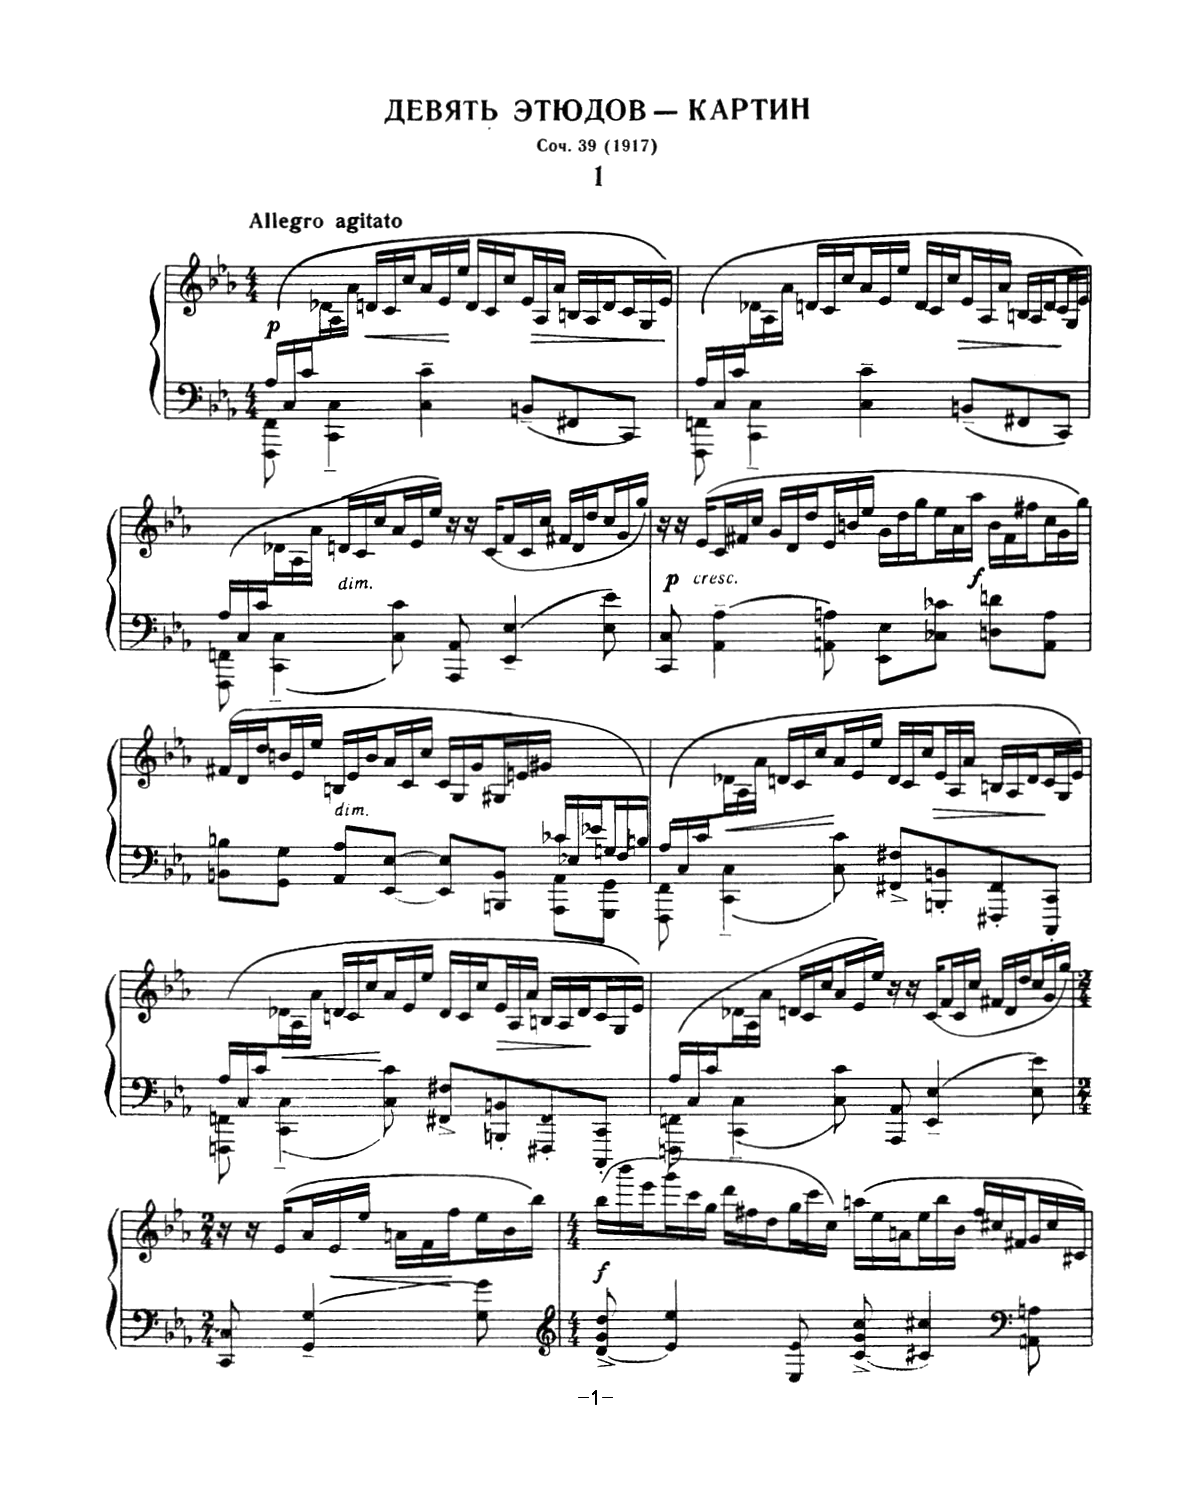 拉赫玛尼诺夫 音画练习曲9或10 Etudes tableaux Op.39 No.1钢琴谱